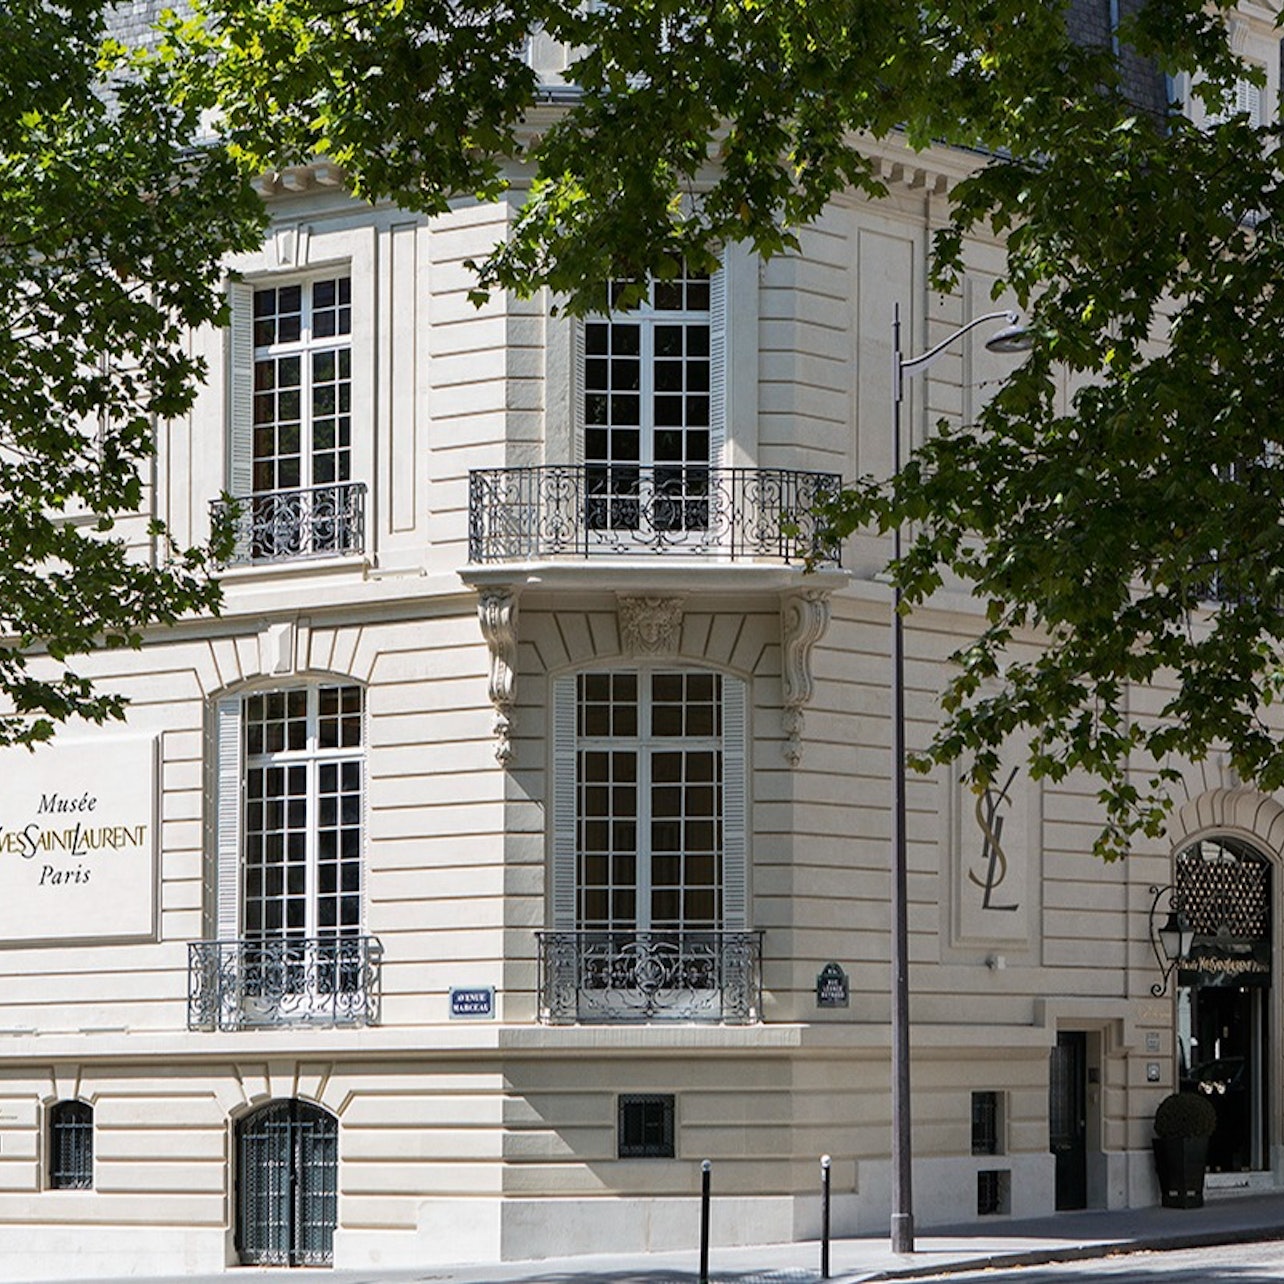 Picture of Musée Yves Saint Laurent Paris in Paris, France